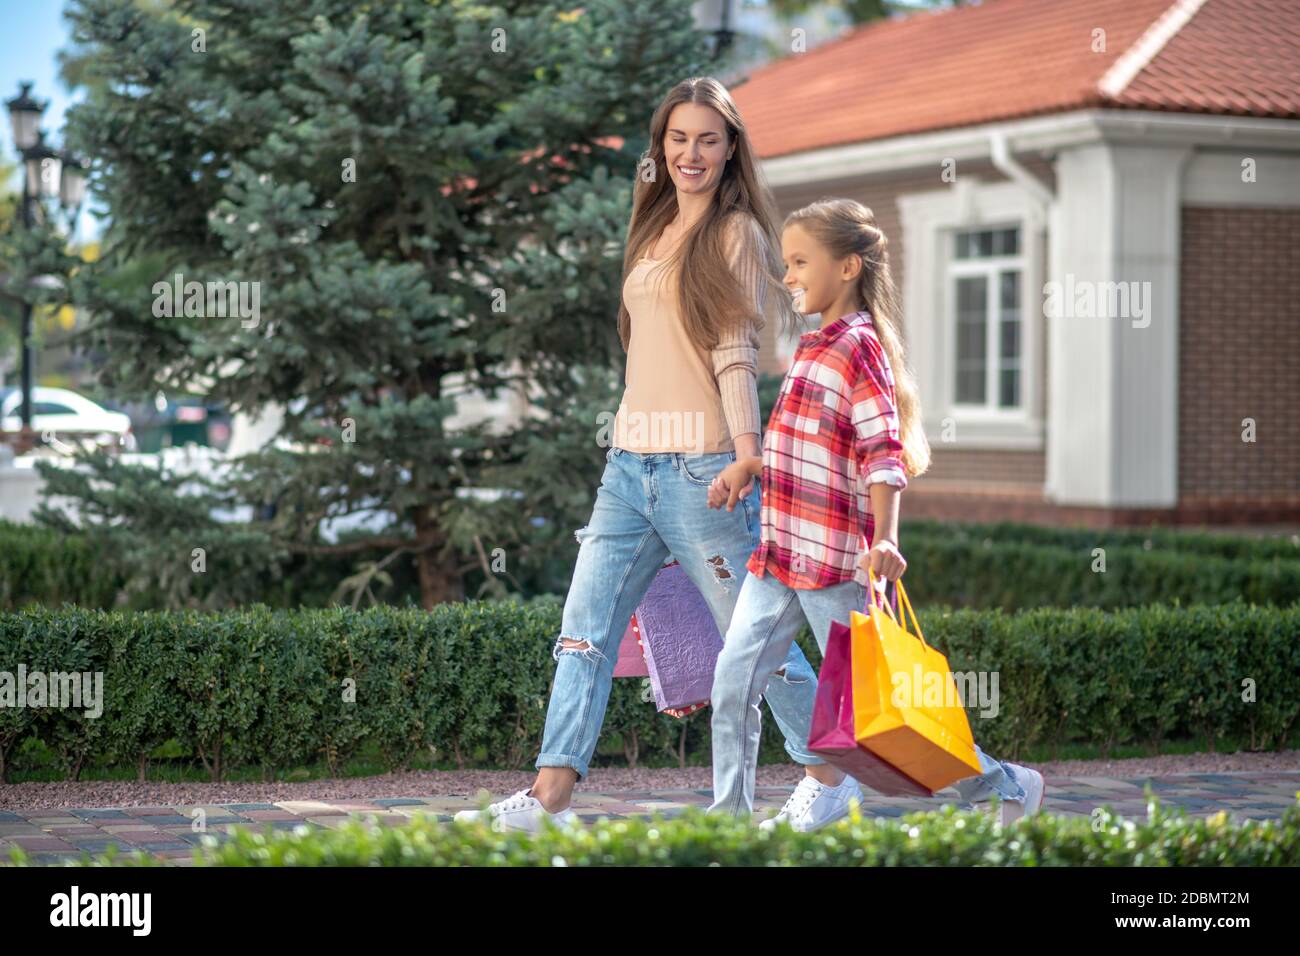 Lächelnde Mutter und Tochter gehen Hand in Hand mit Einkaufen Taschen Stockfoto